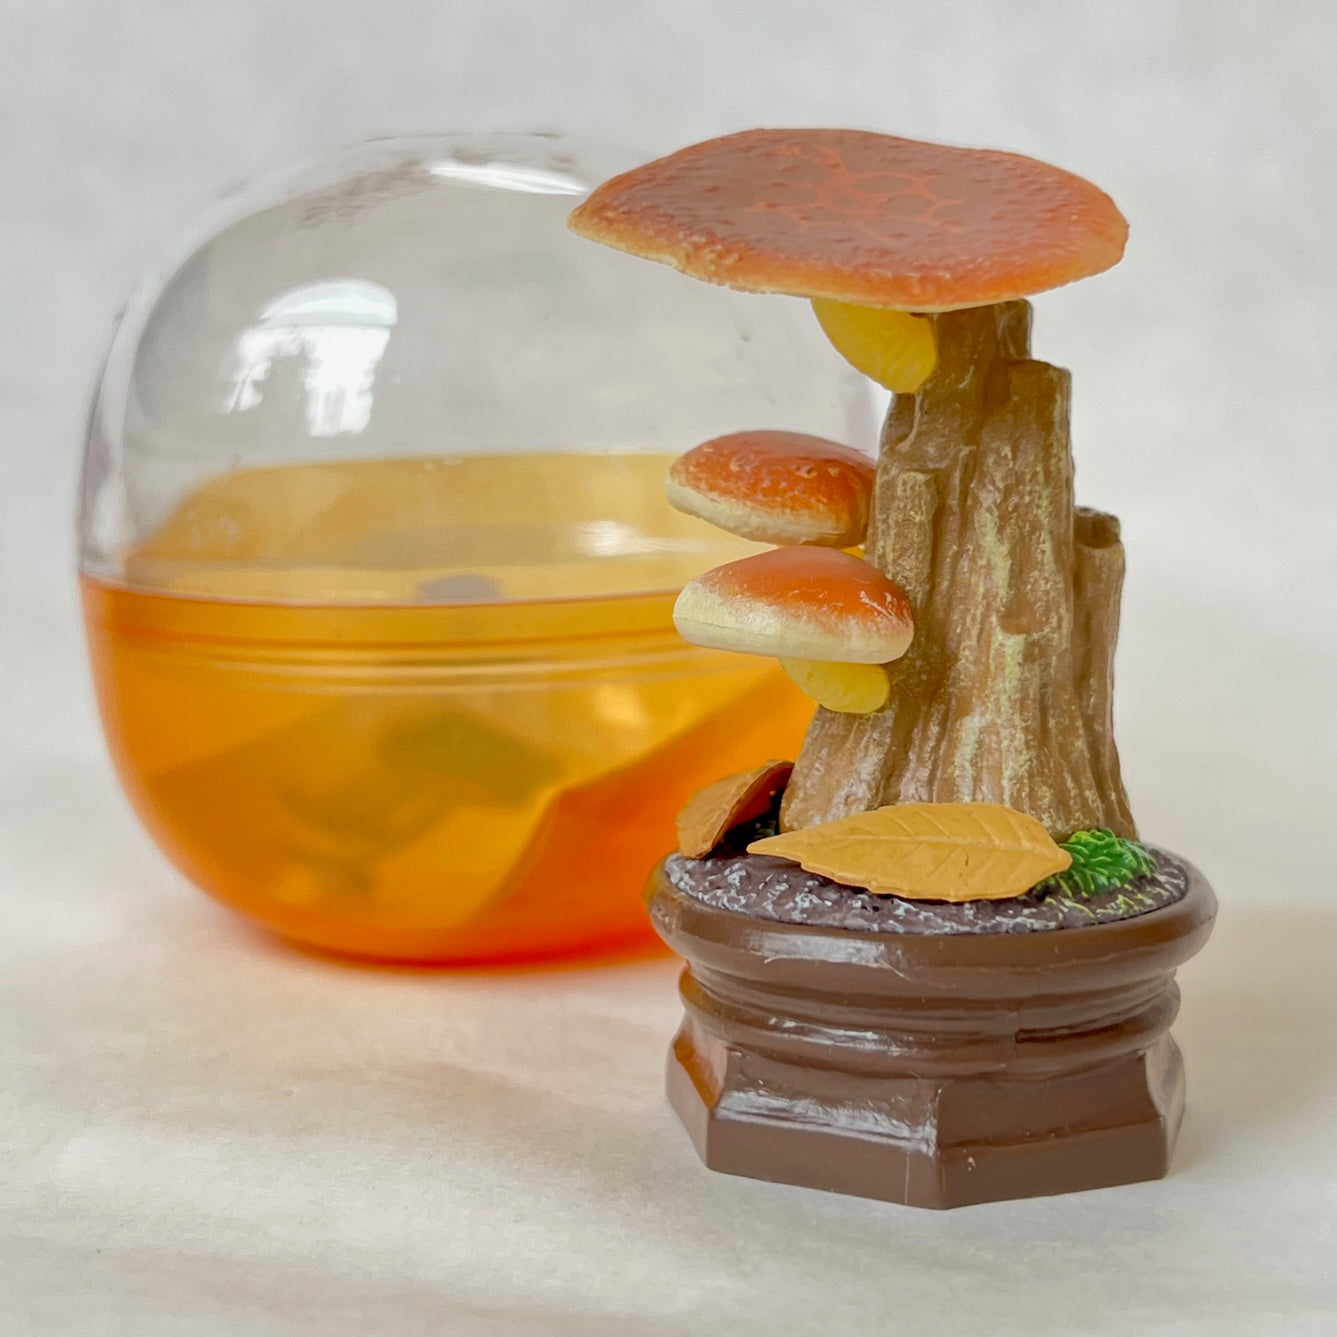 70219 Mushroom Vol. 2 Figurine Capsule-6